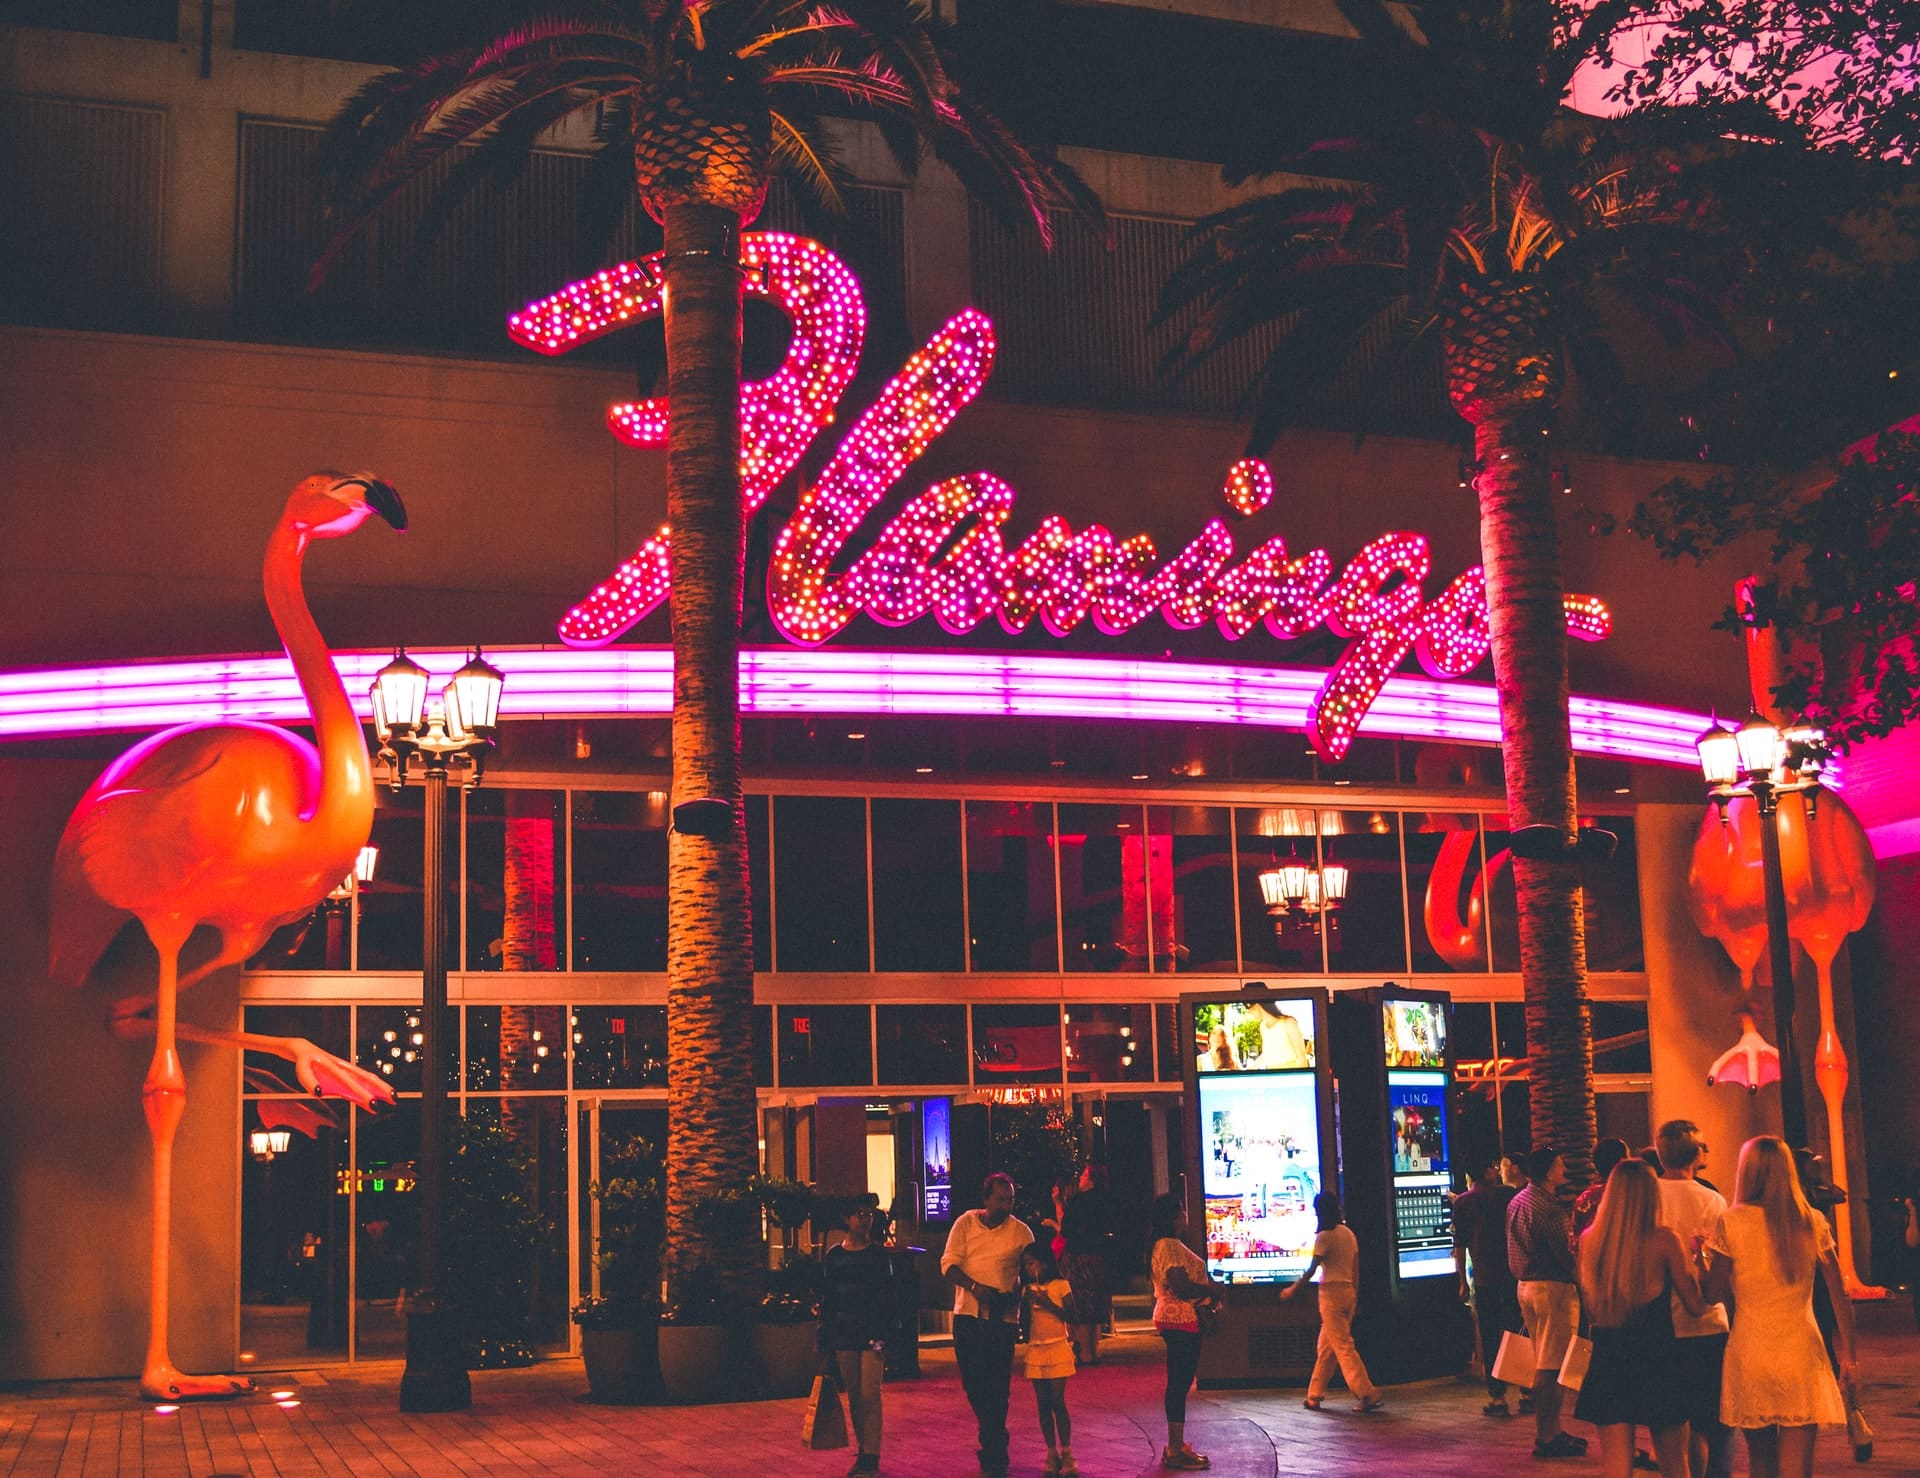 Flamingo hotel in Las Vegas